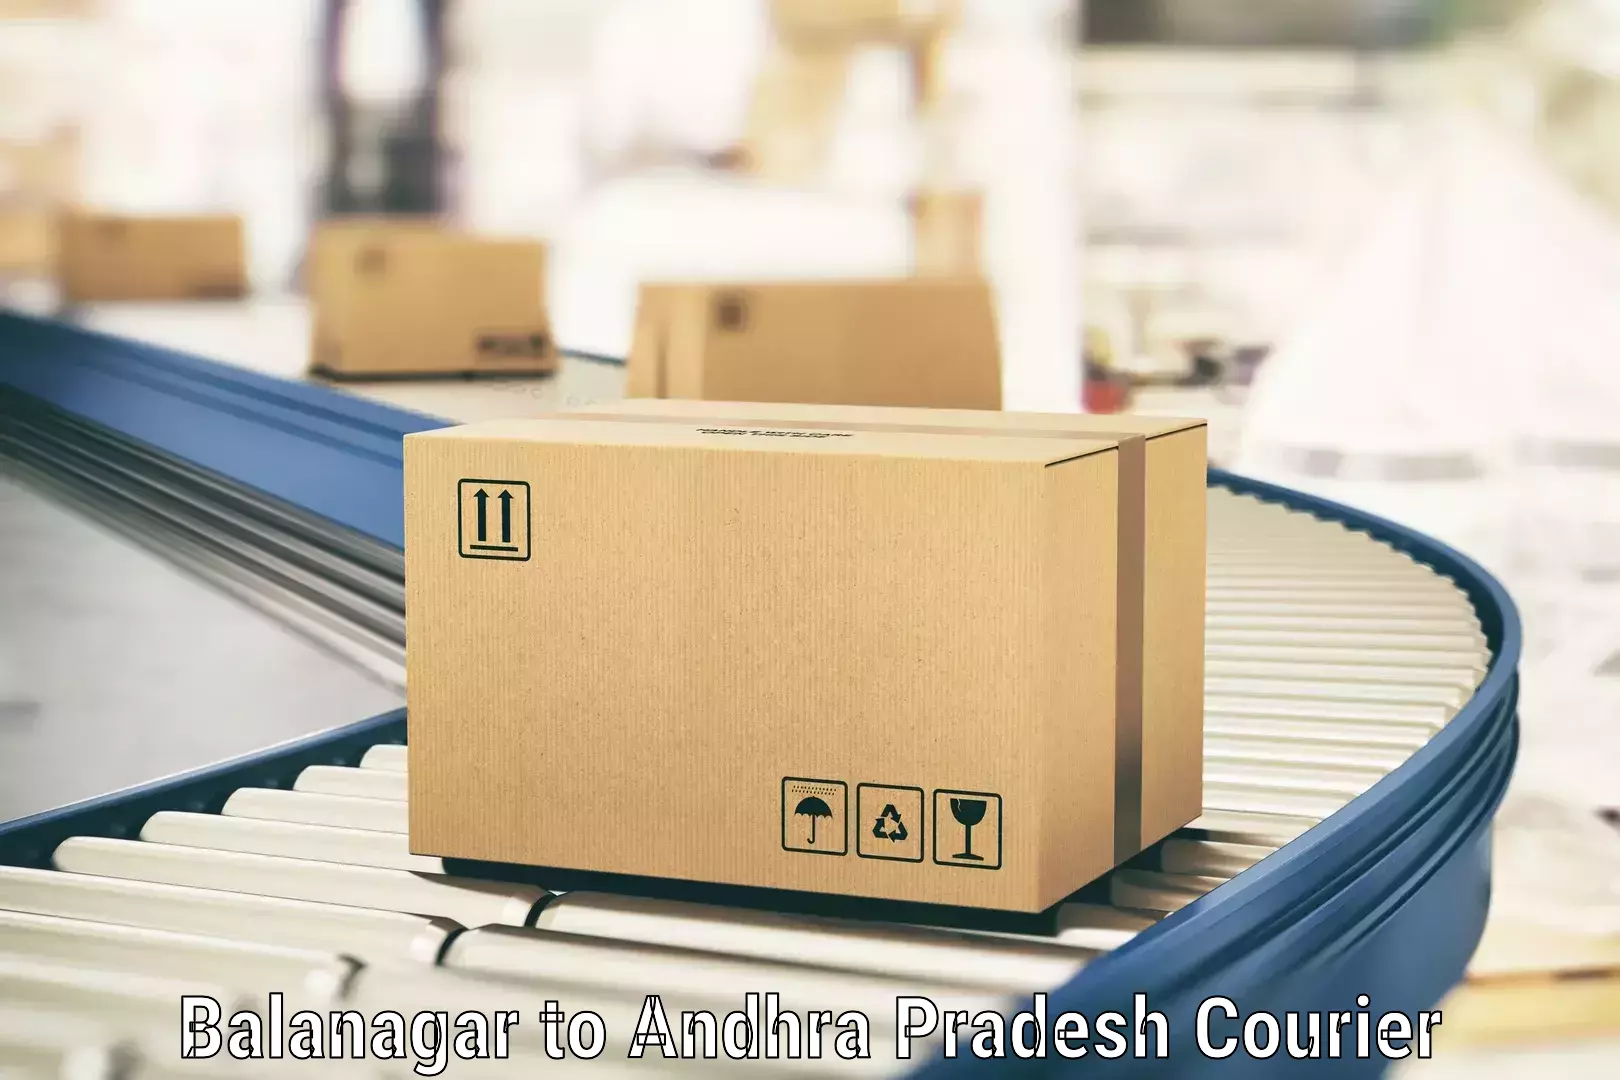 Nationwide parcel services in Balanagar to Cuddapah